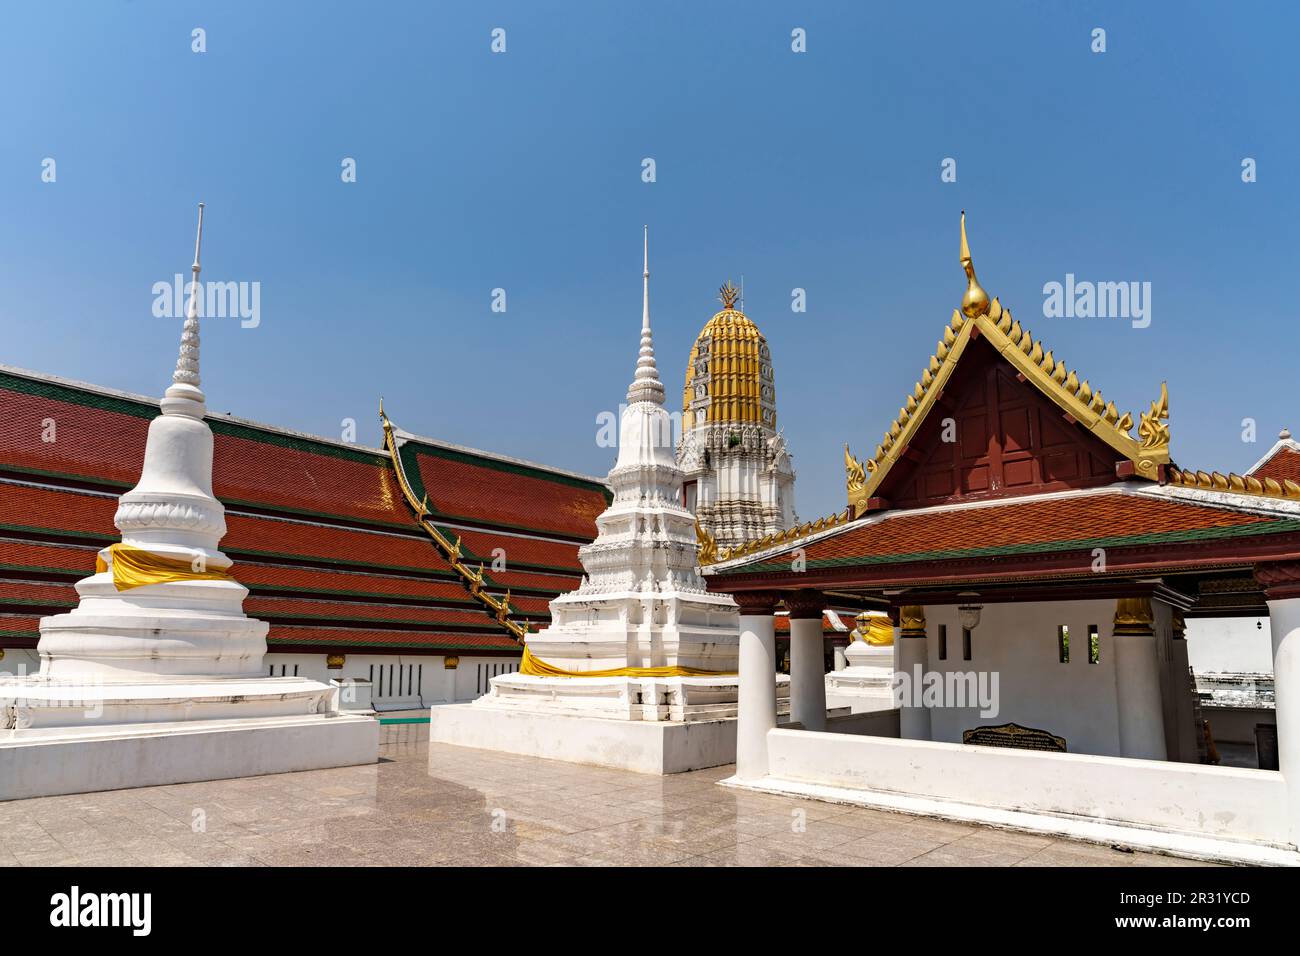 Prang und Chedi des  buddhistischen Tempel Wat Phra Si Rattana Mahathat in Phitsanulok, Thailand, Asien  |  Wat Phra Si Rattana Mahathat  buddhist tem Stock Photo